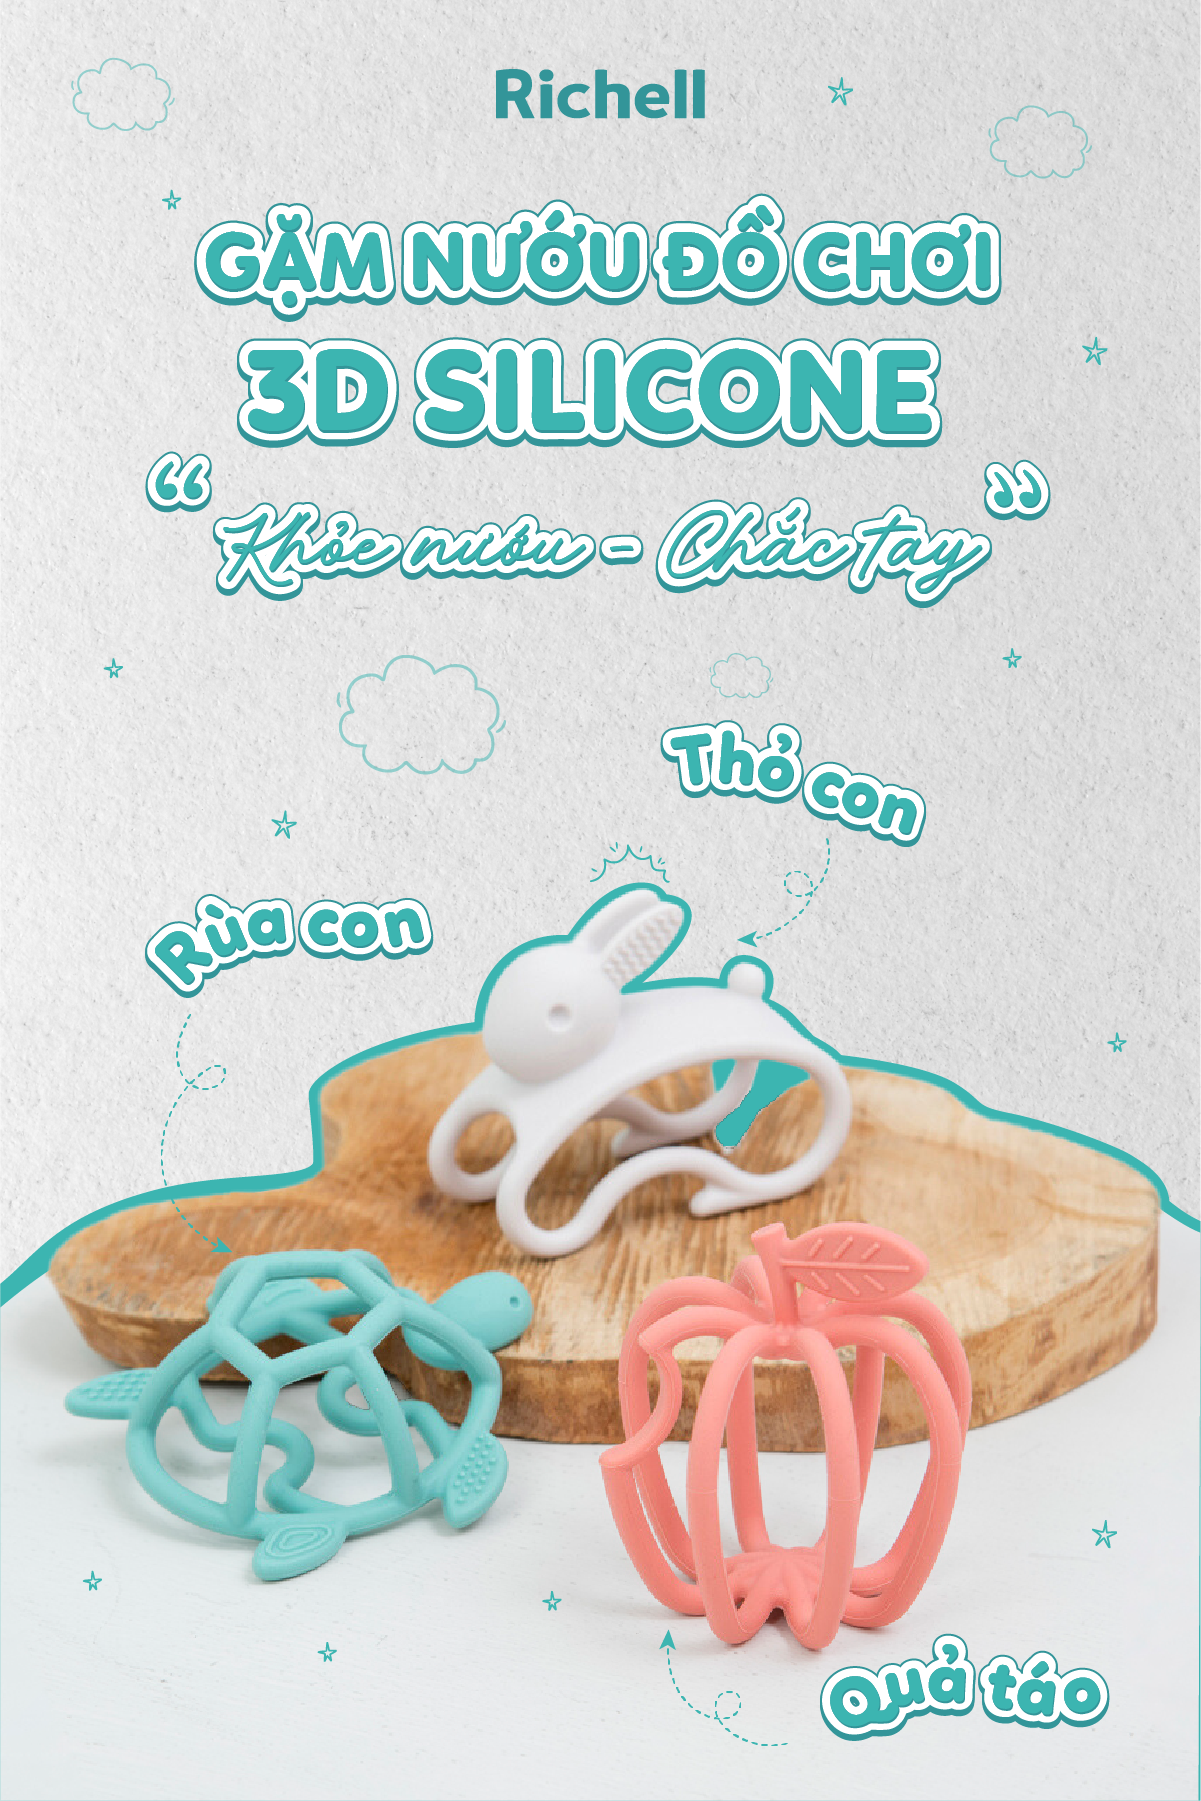 Gặm nướu silicone 3D Richell